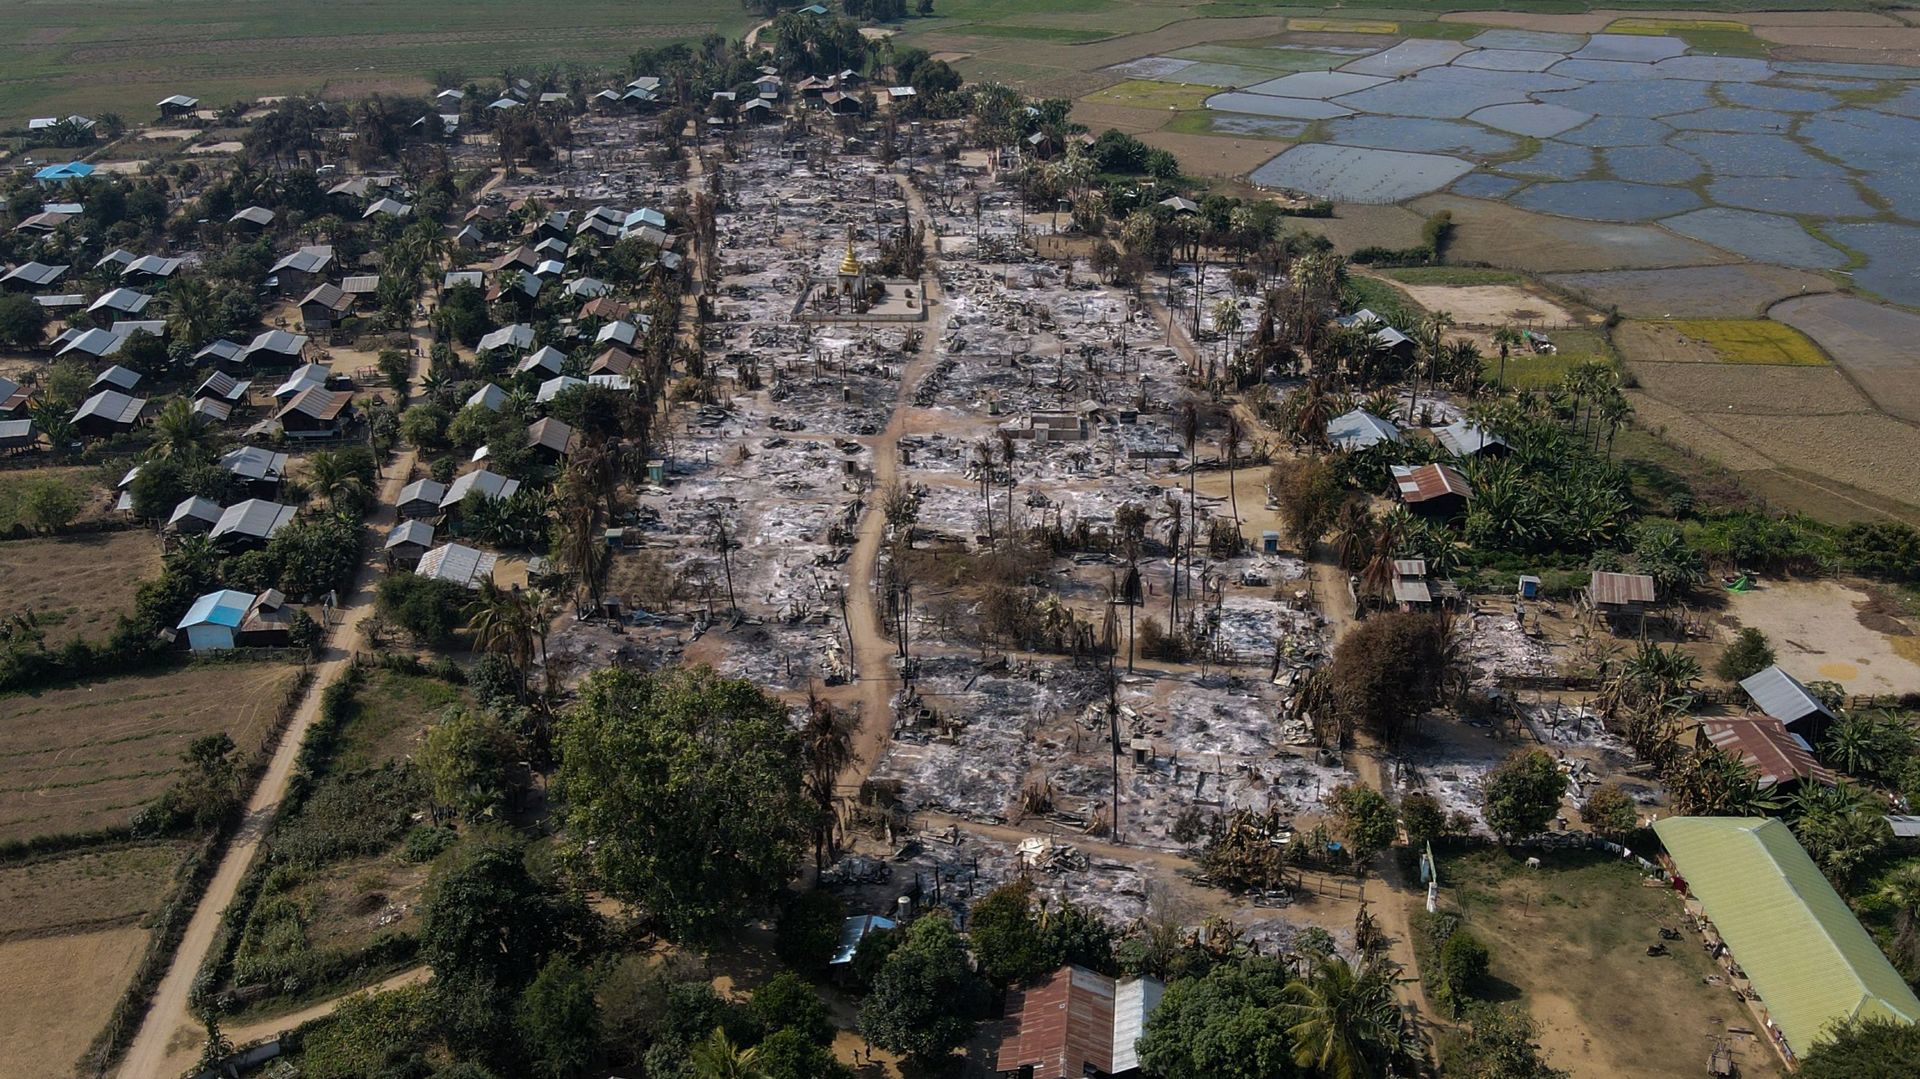 Cette photo de Chin Twin Chit Thu, prise le 3 février 2022 et publiée le 5 février 2022, montre une photo aérienne de bâtiments incendiés dans le canton de Mingin, dans la division de Sagaing, où plus de 105 bâtiments ont été détruits par les troupes mili